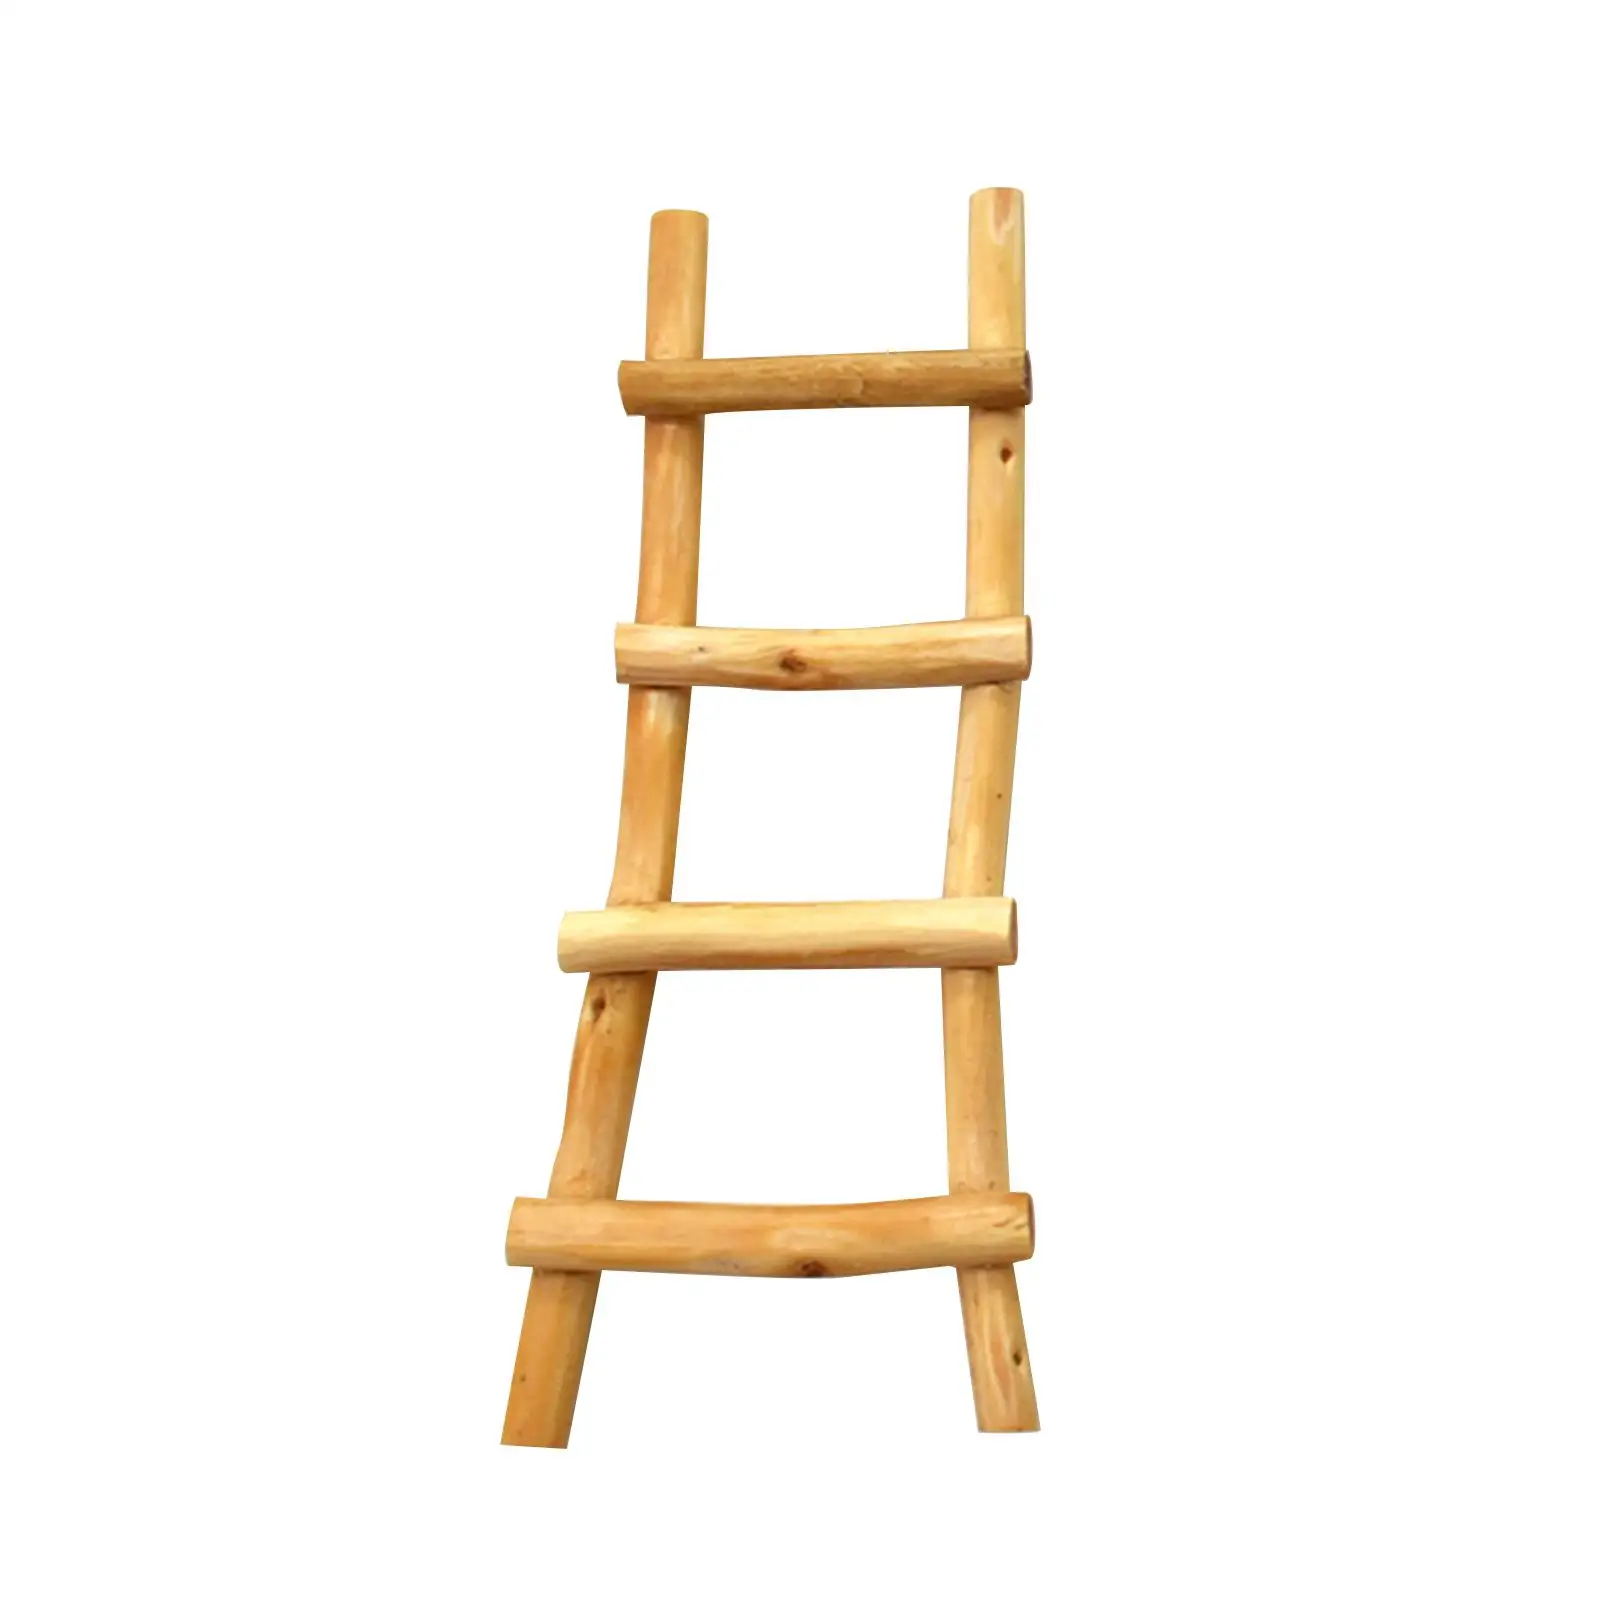 1:12 Fairy Garden Ladder Furniture Landscape Decor 1/12 Wooden Mini Ladder